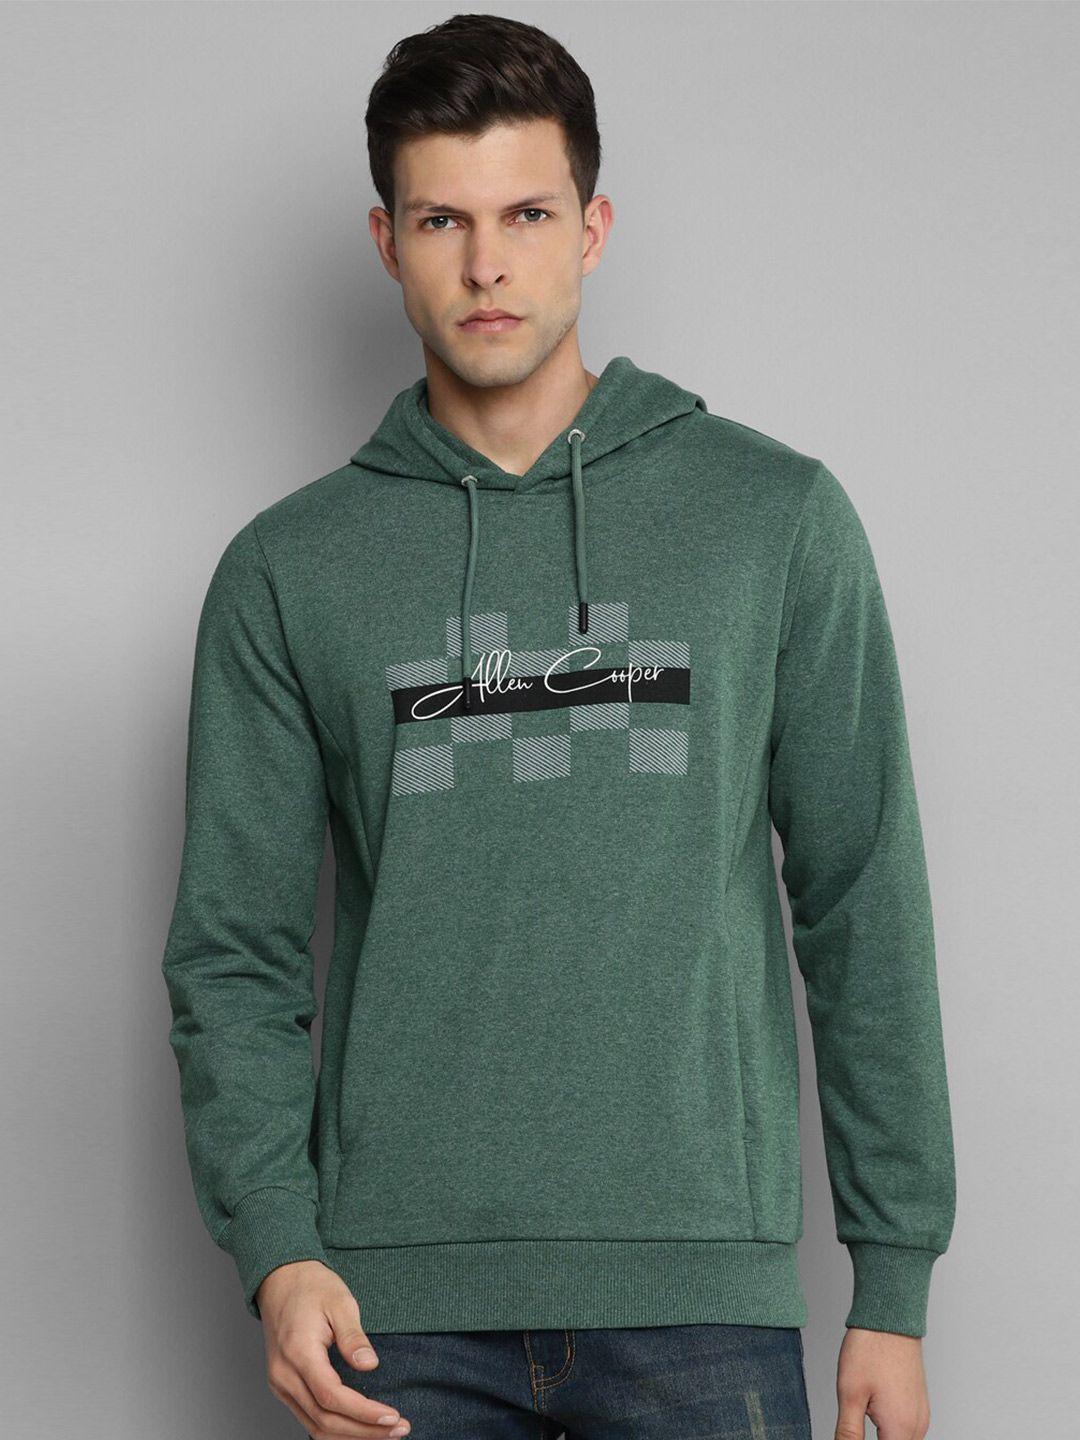 allen-cooper-men-olive-green-printed-hooded-sweatshirt